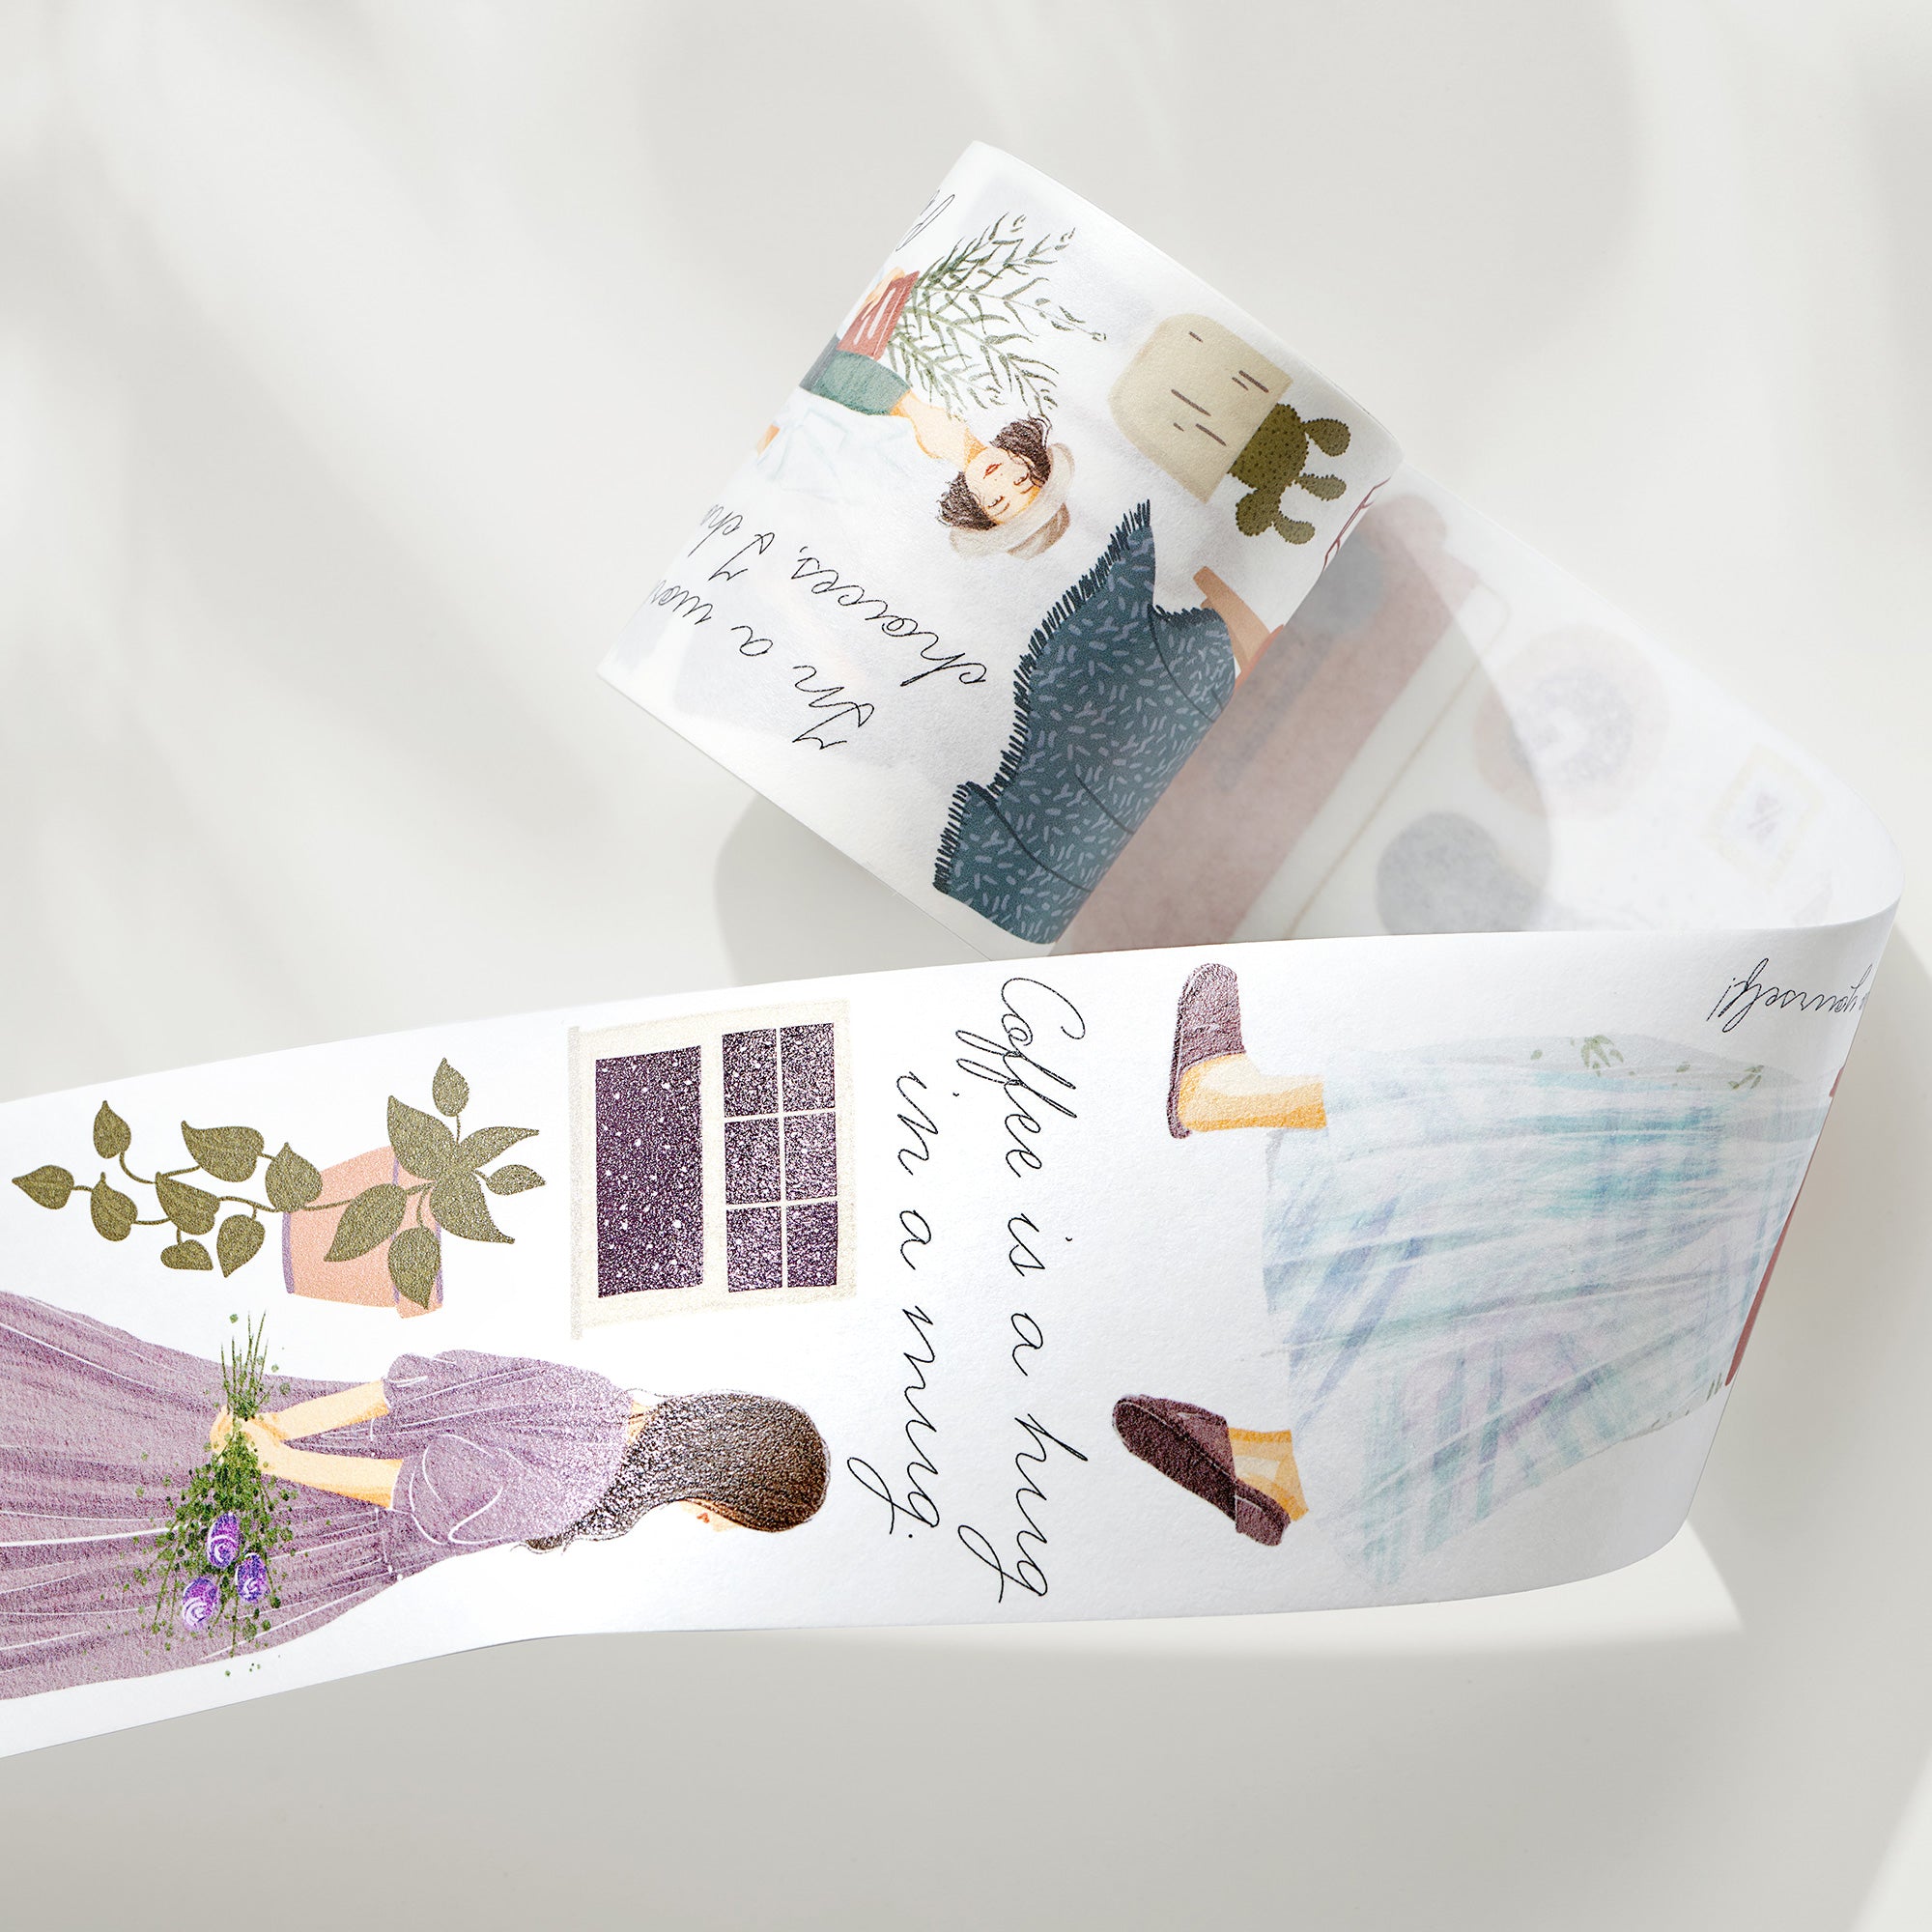 Altered Book Art Journal with Washi Tape - Shop cutetape Washi Tape USA